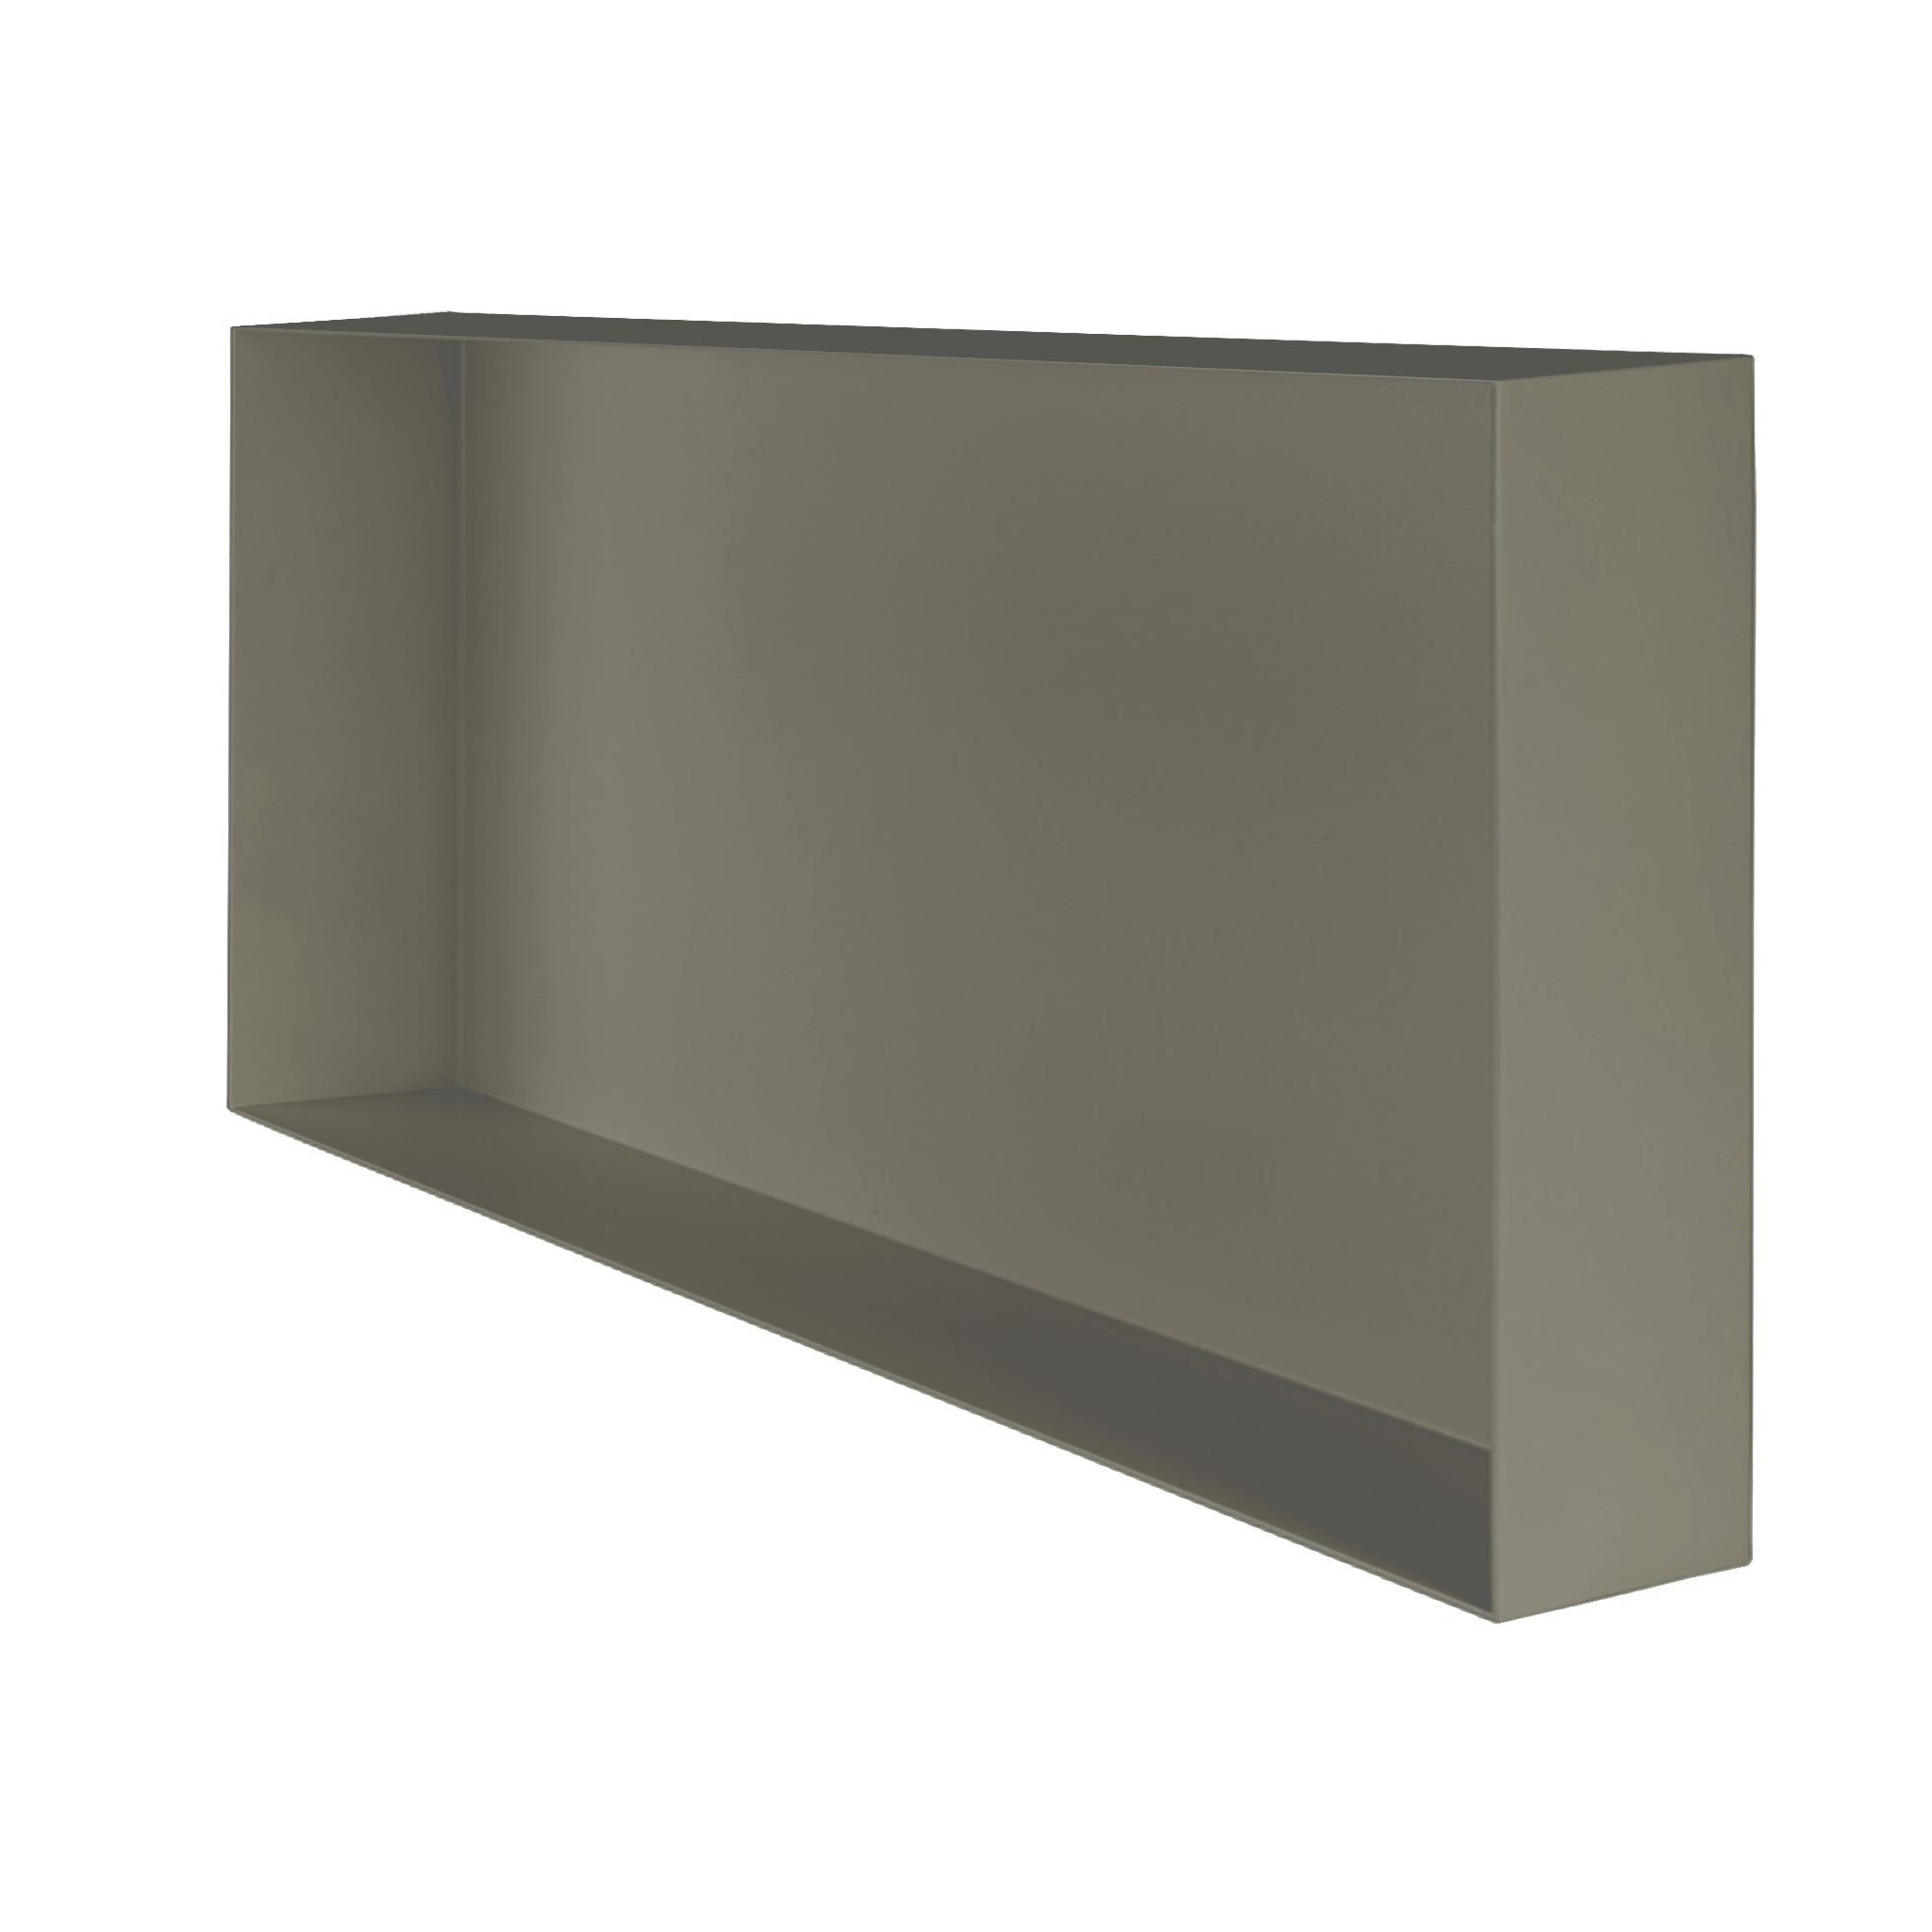 Valli Home – V-Box, Nicchia portaoggetti in Metallo smaltato color Grigio KK69, Misura 30X60 P. 10 cm – V-BOX.MLLO.30X60.69